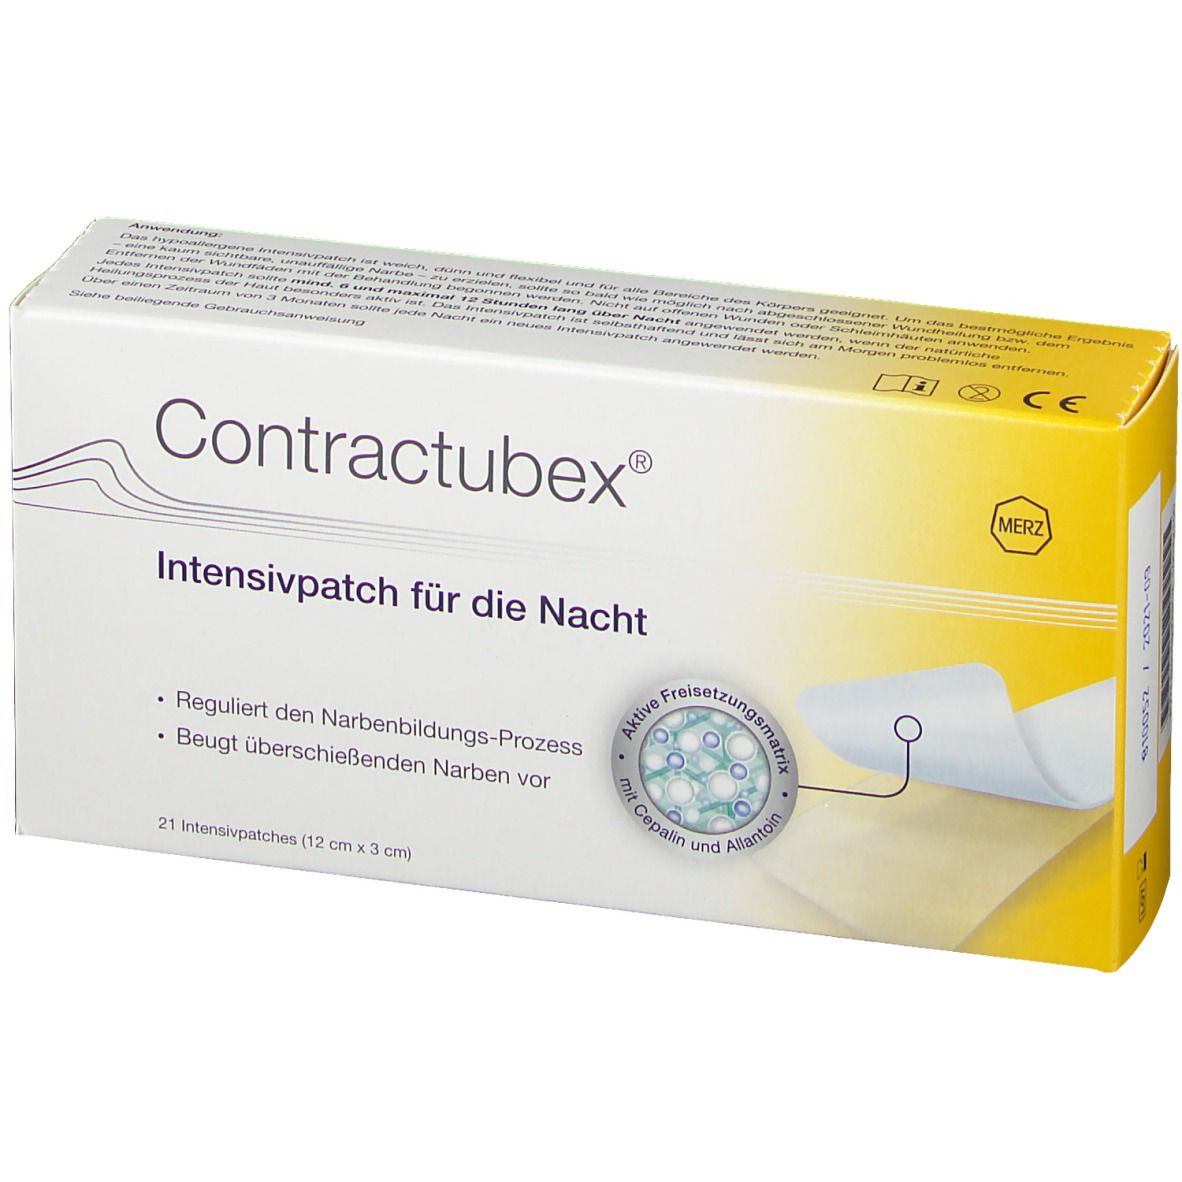 Contractubex® Intensivpatch für die Nacht 12 x 3 cm